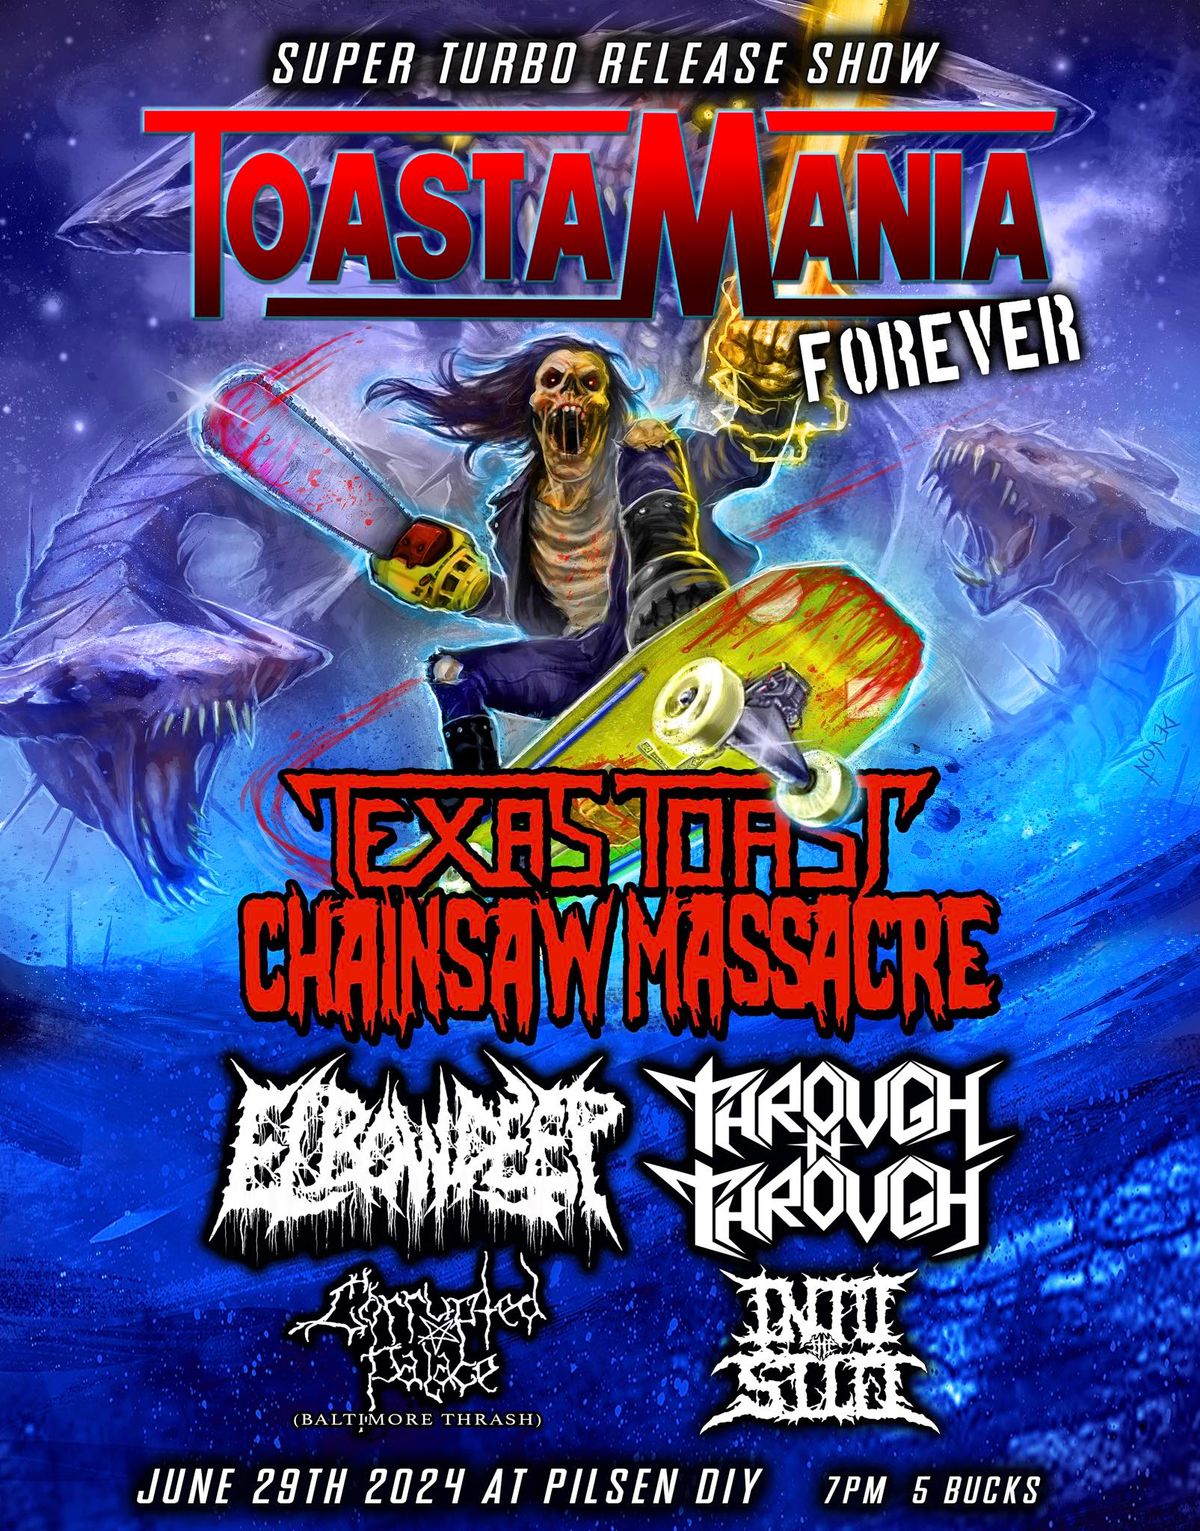 Toastamania forever - TTCM album release show! w\/Elbow Deep\/Through n Through\/ Into the Silo